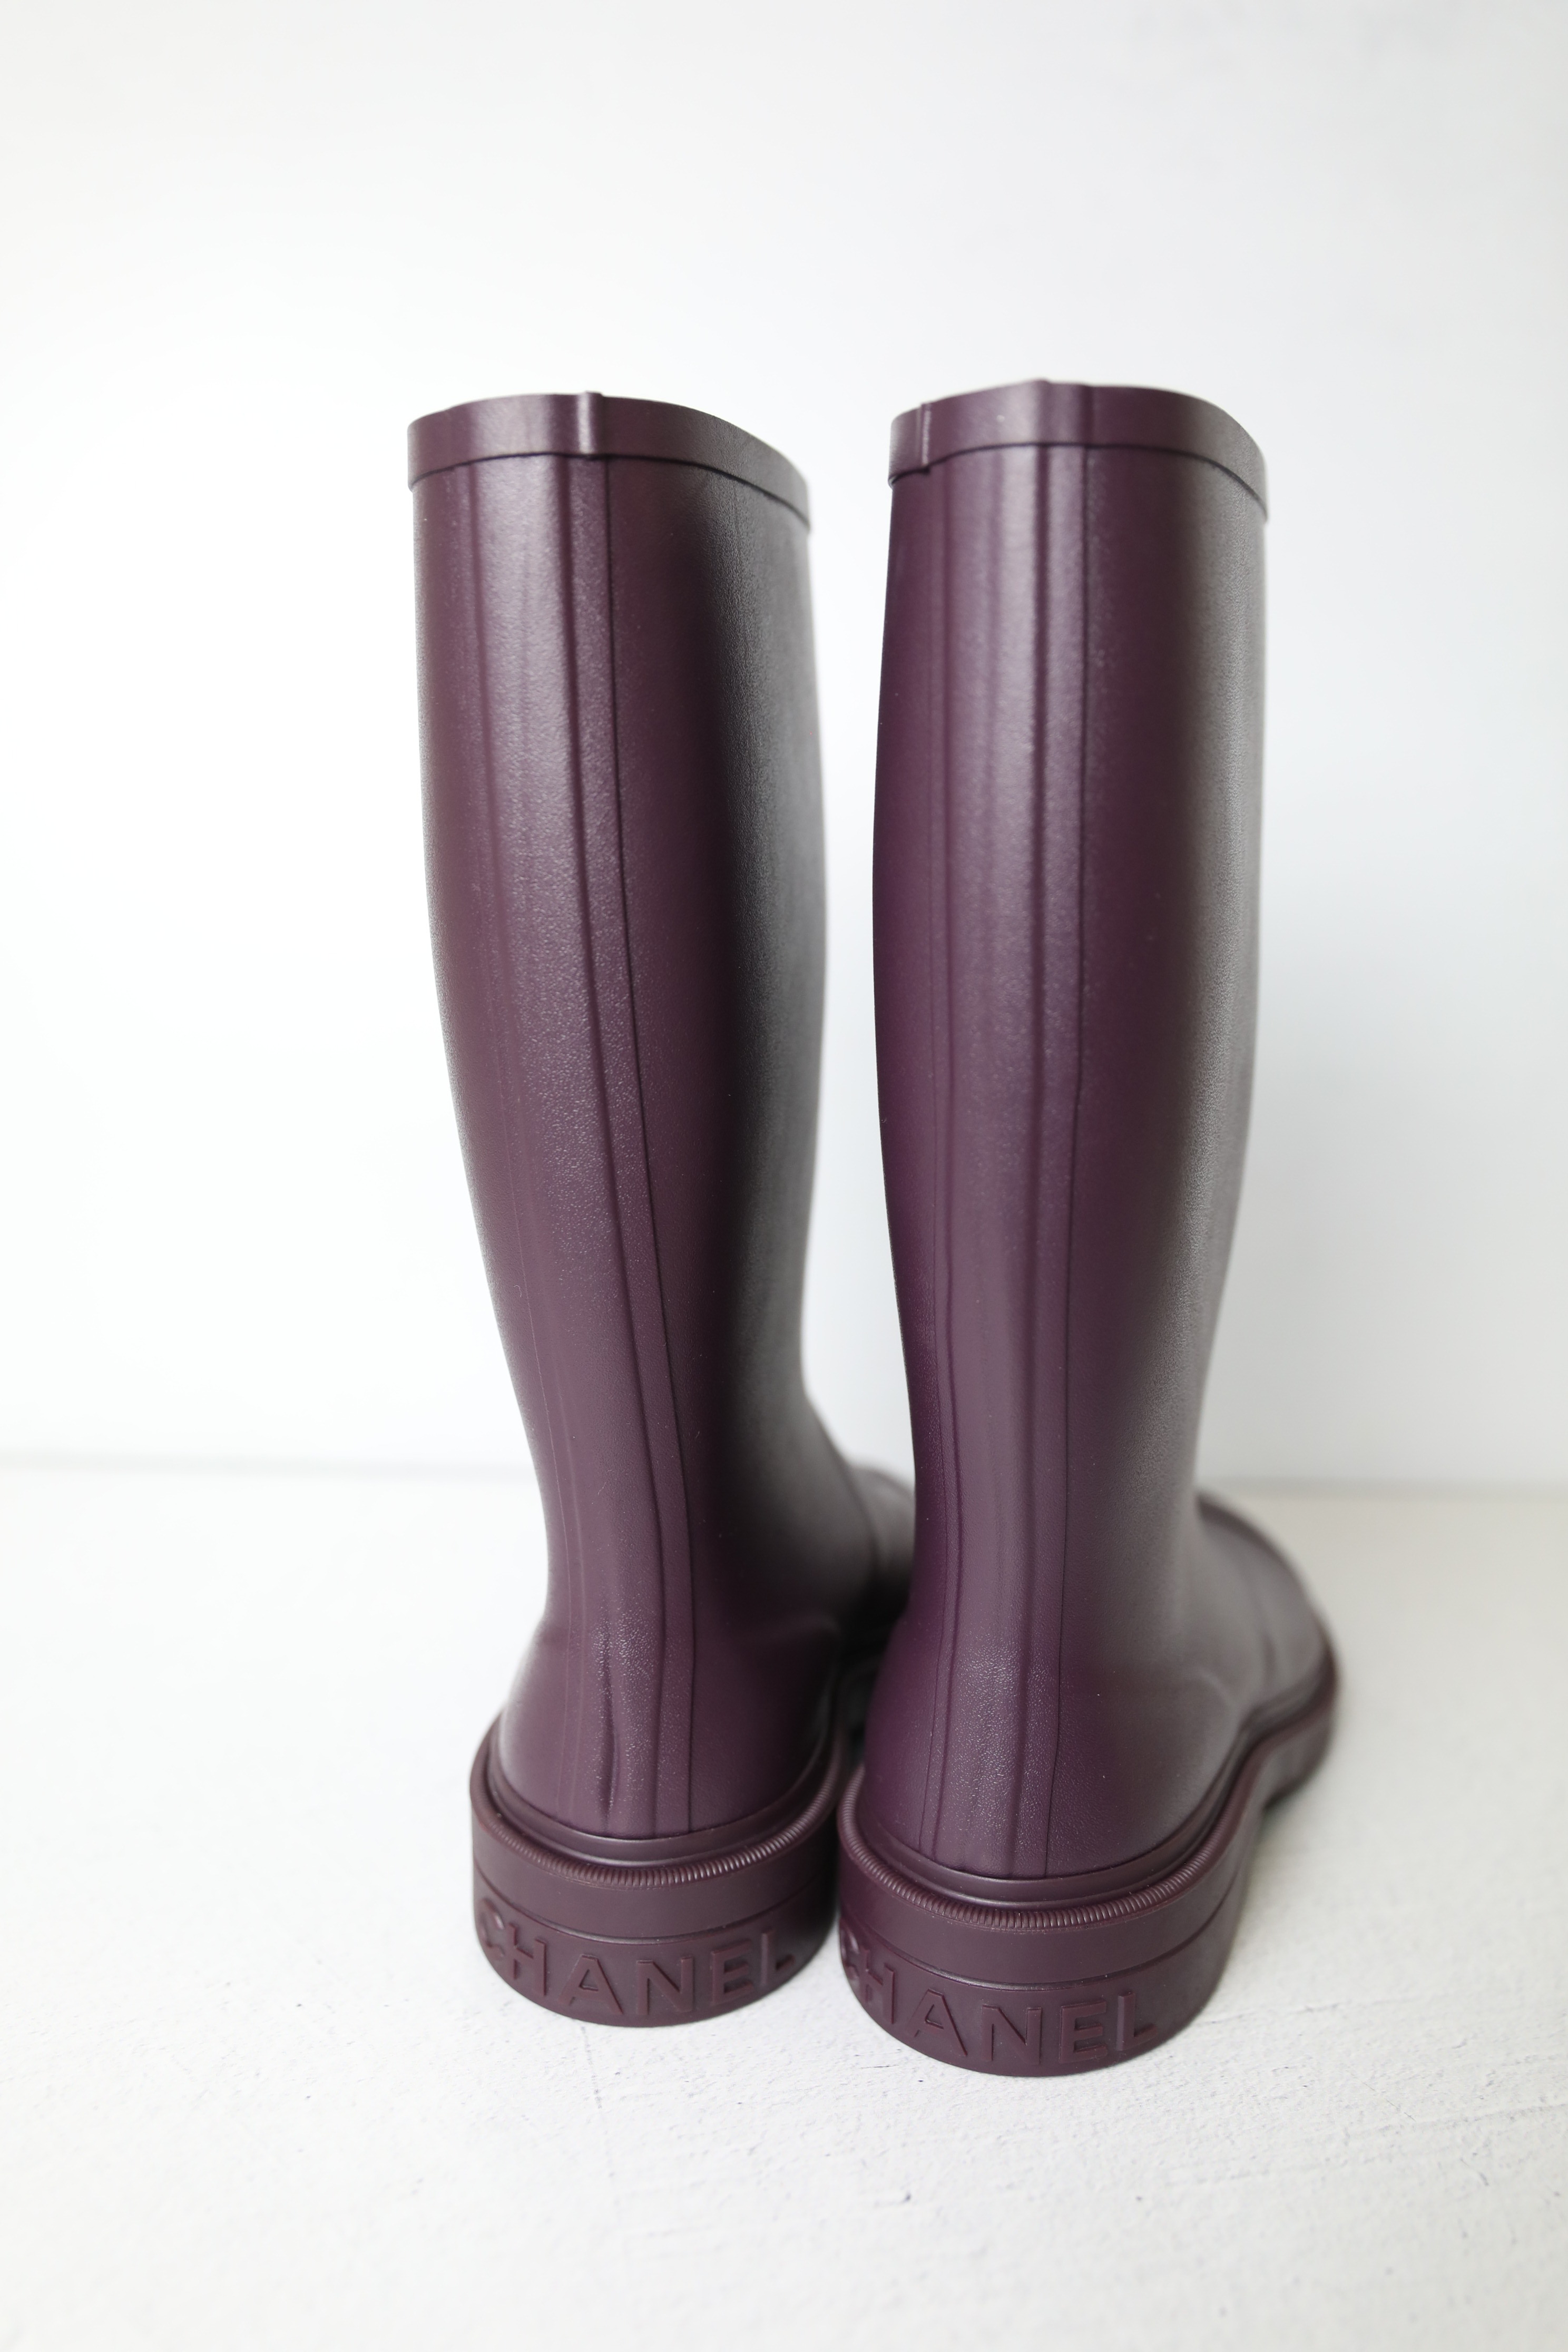 Chanel Rubber Rain Boots, Purple, New in Box WA001 - Julia Rose Boston